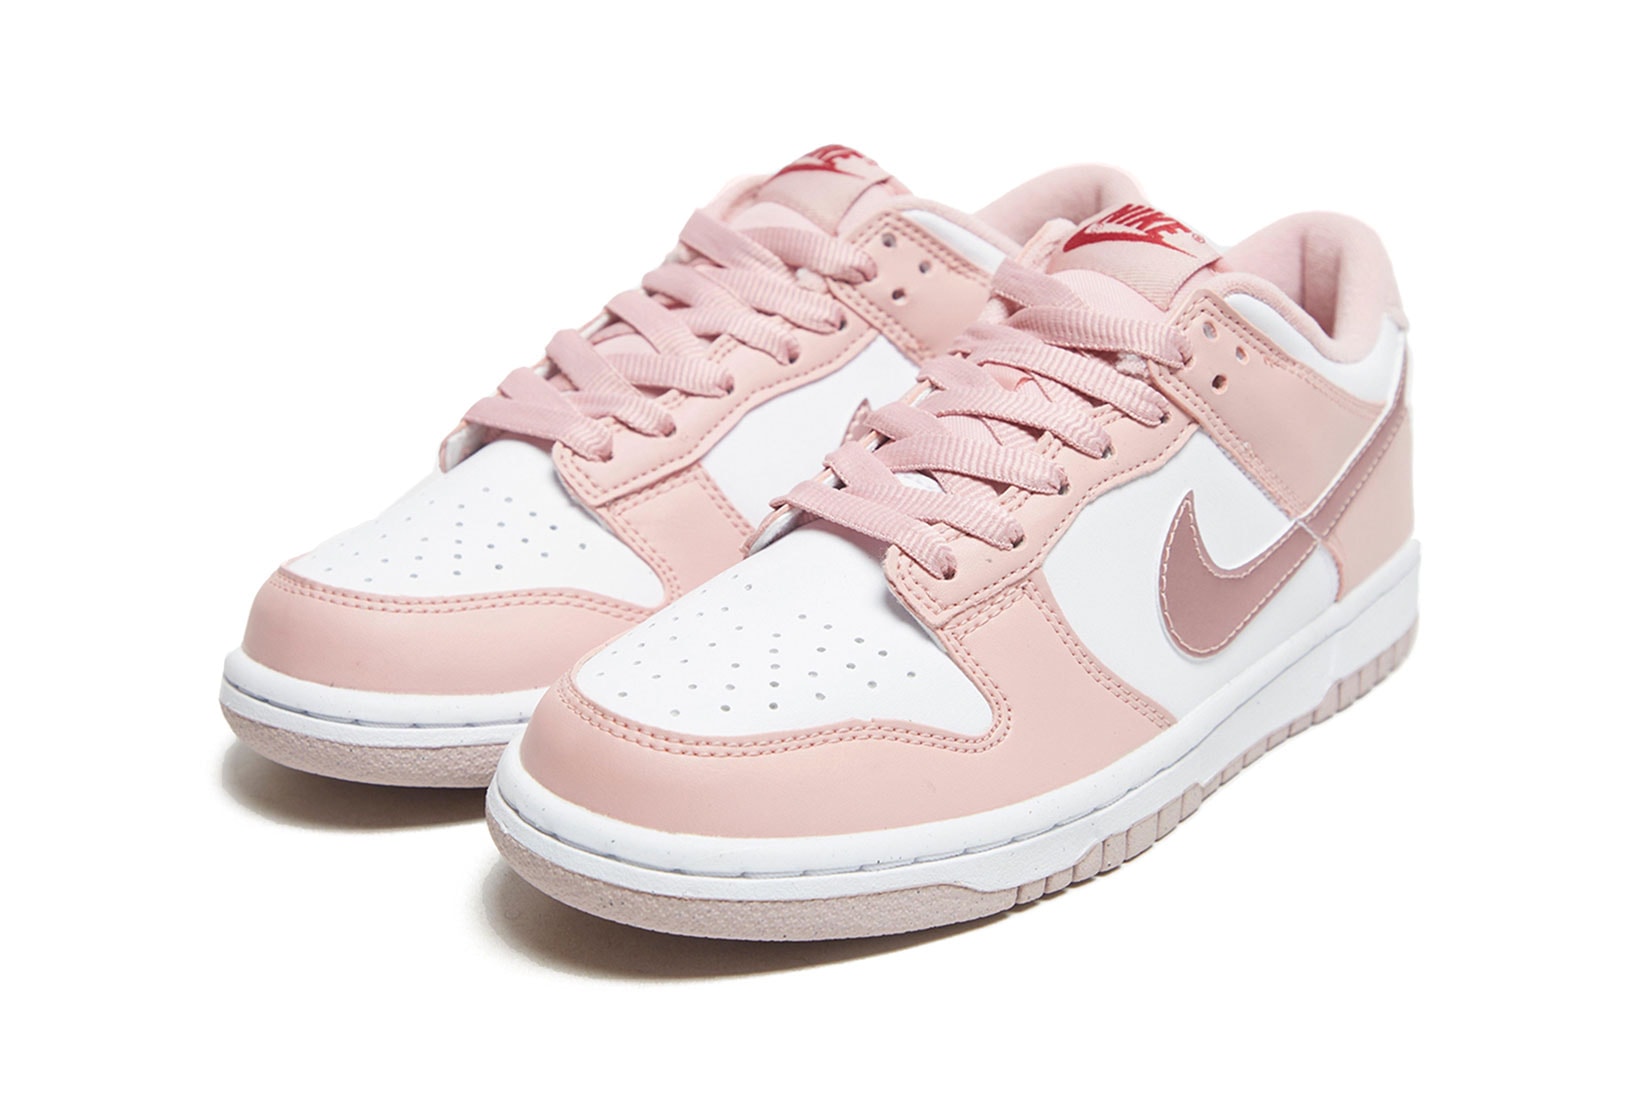 Nike dunk low Pink Velvet Pastel Sneakers Girls GS Sizing